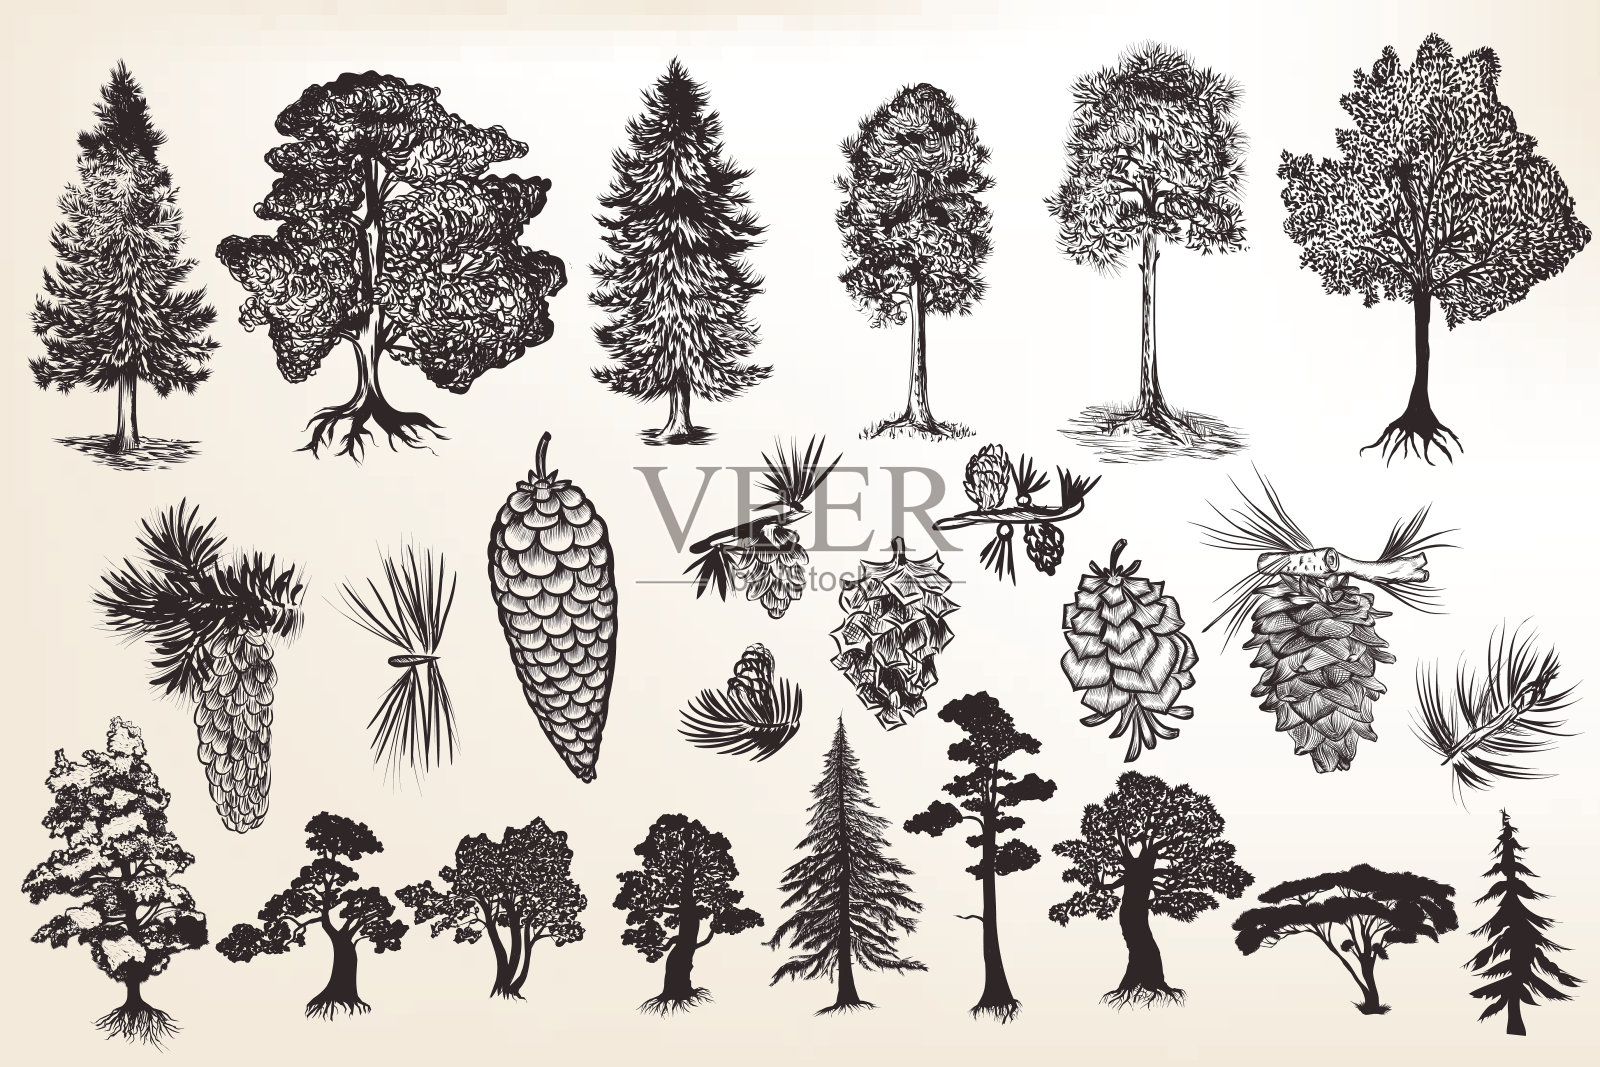 一套雕刻风格的手绘树木的集合或集合插画图片素材